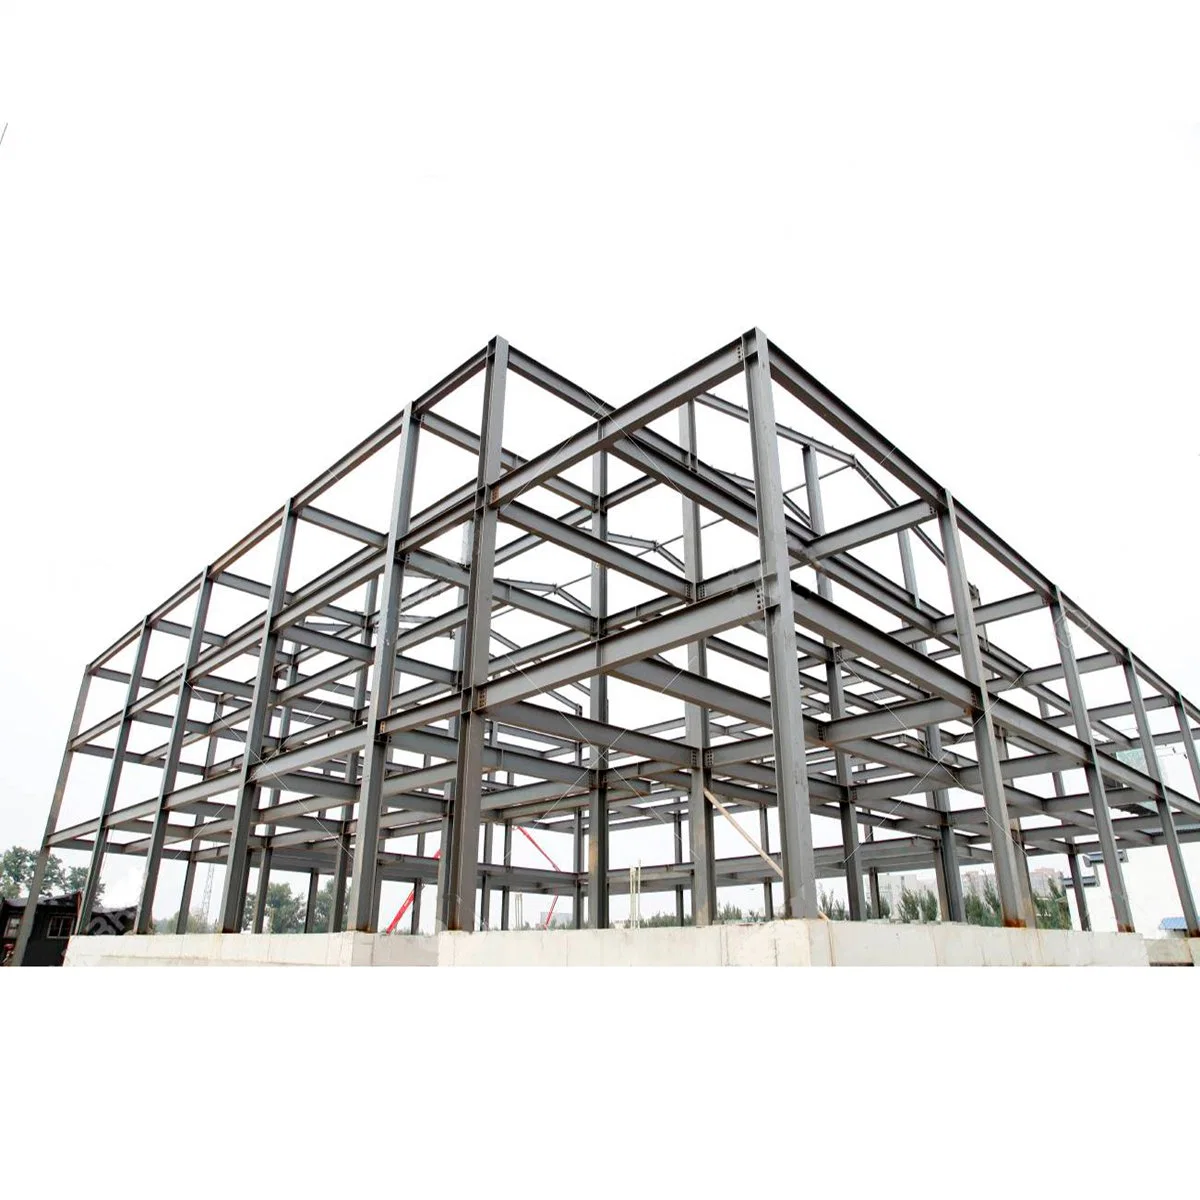 الصين رخيصة مقاومة الرياح بريه hangar Warehouse بناء مواد هيكل فولاذي مثالي